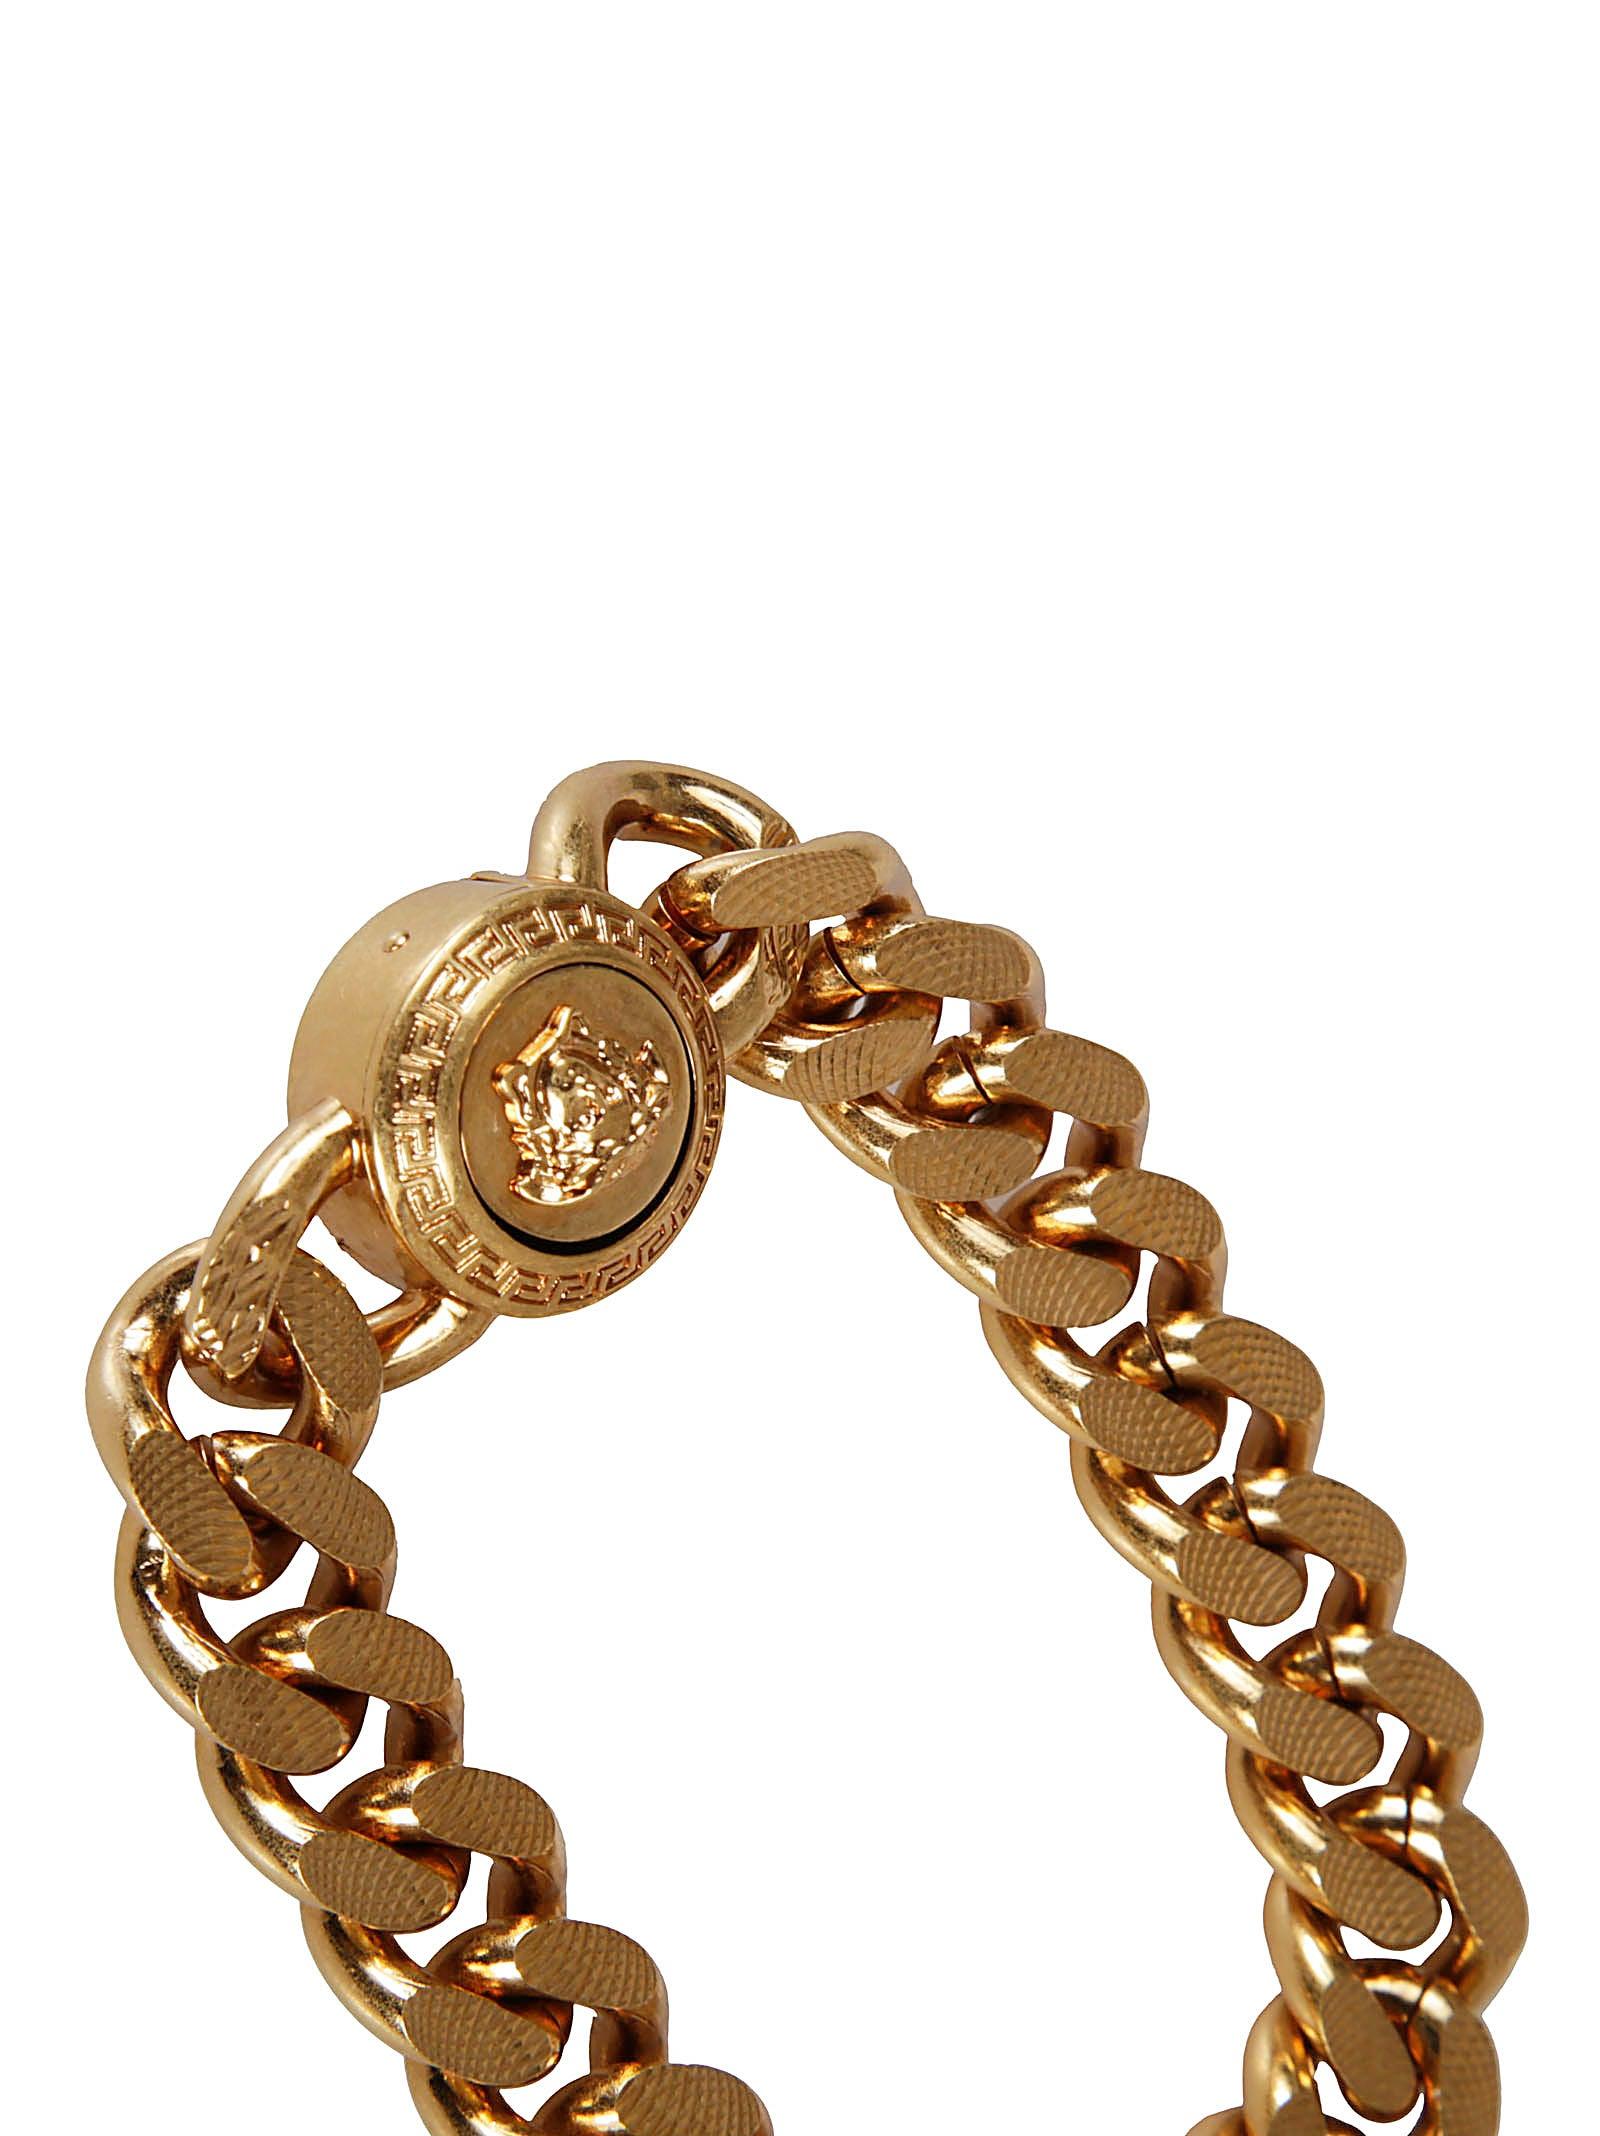 Versace Bijoux in Gold (Metallic) for Men - Save 63% | Lyst